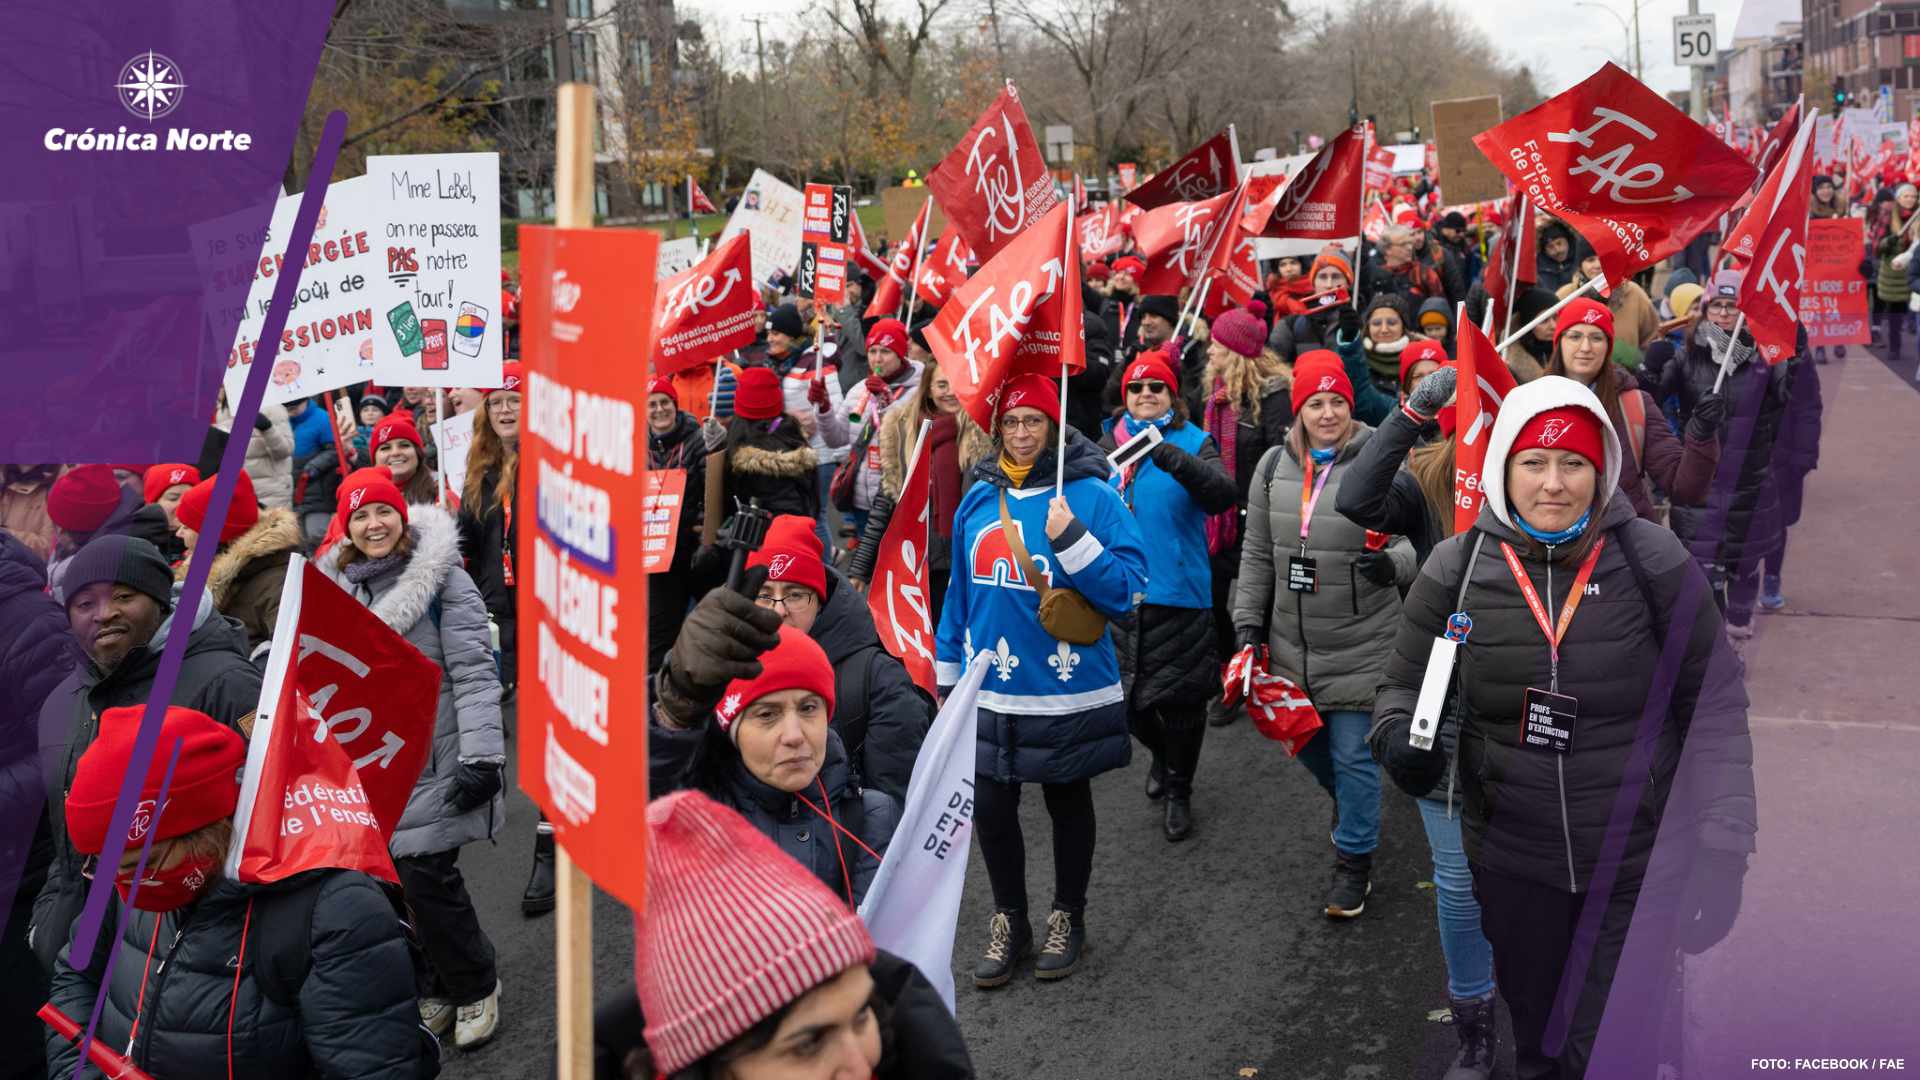 Entre huelgas, sigue negociación de sindicatos con Quebec